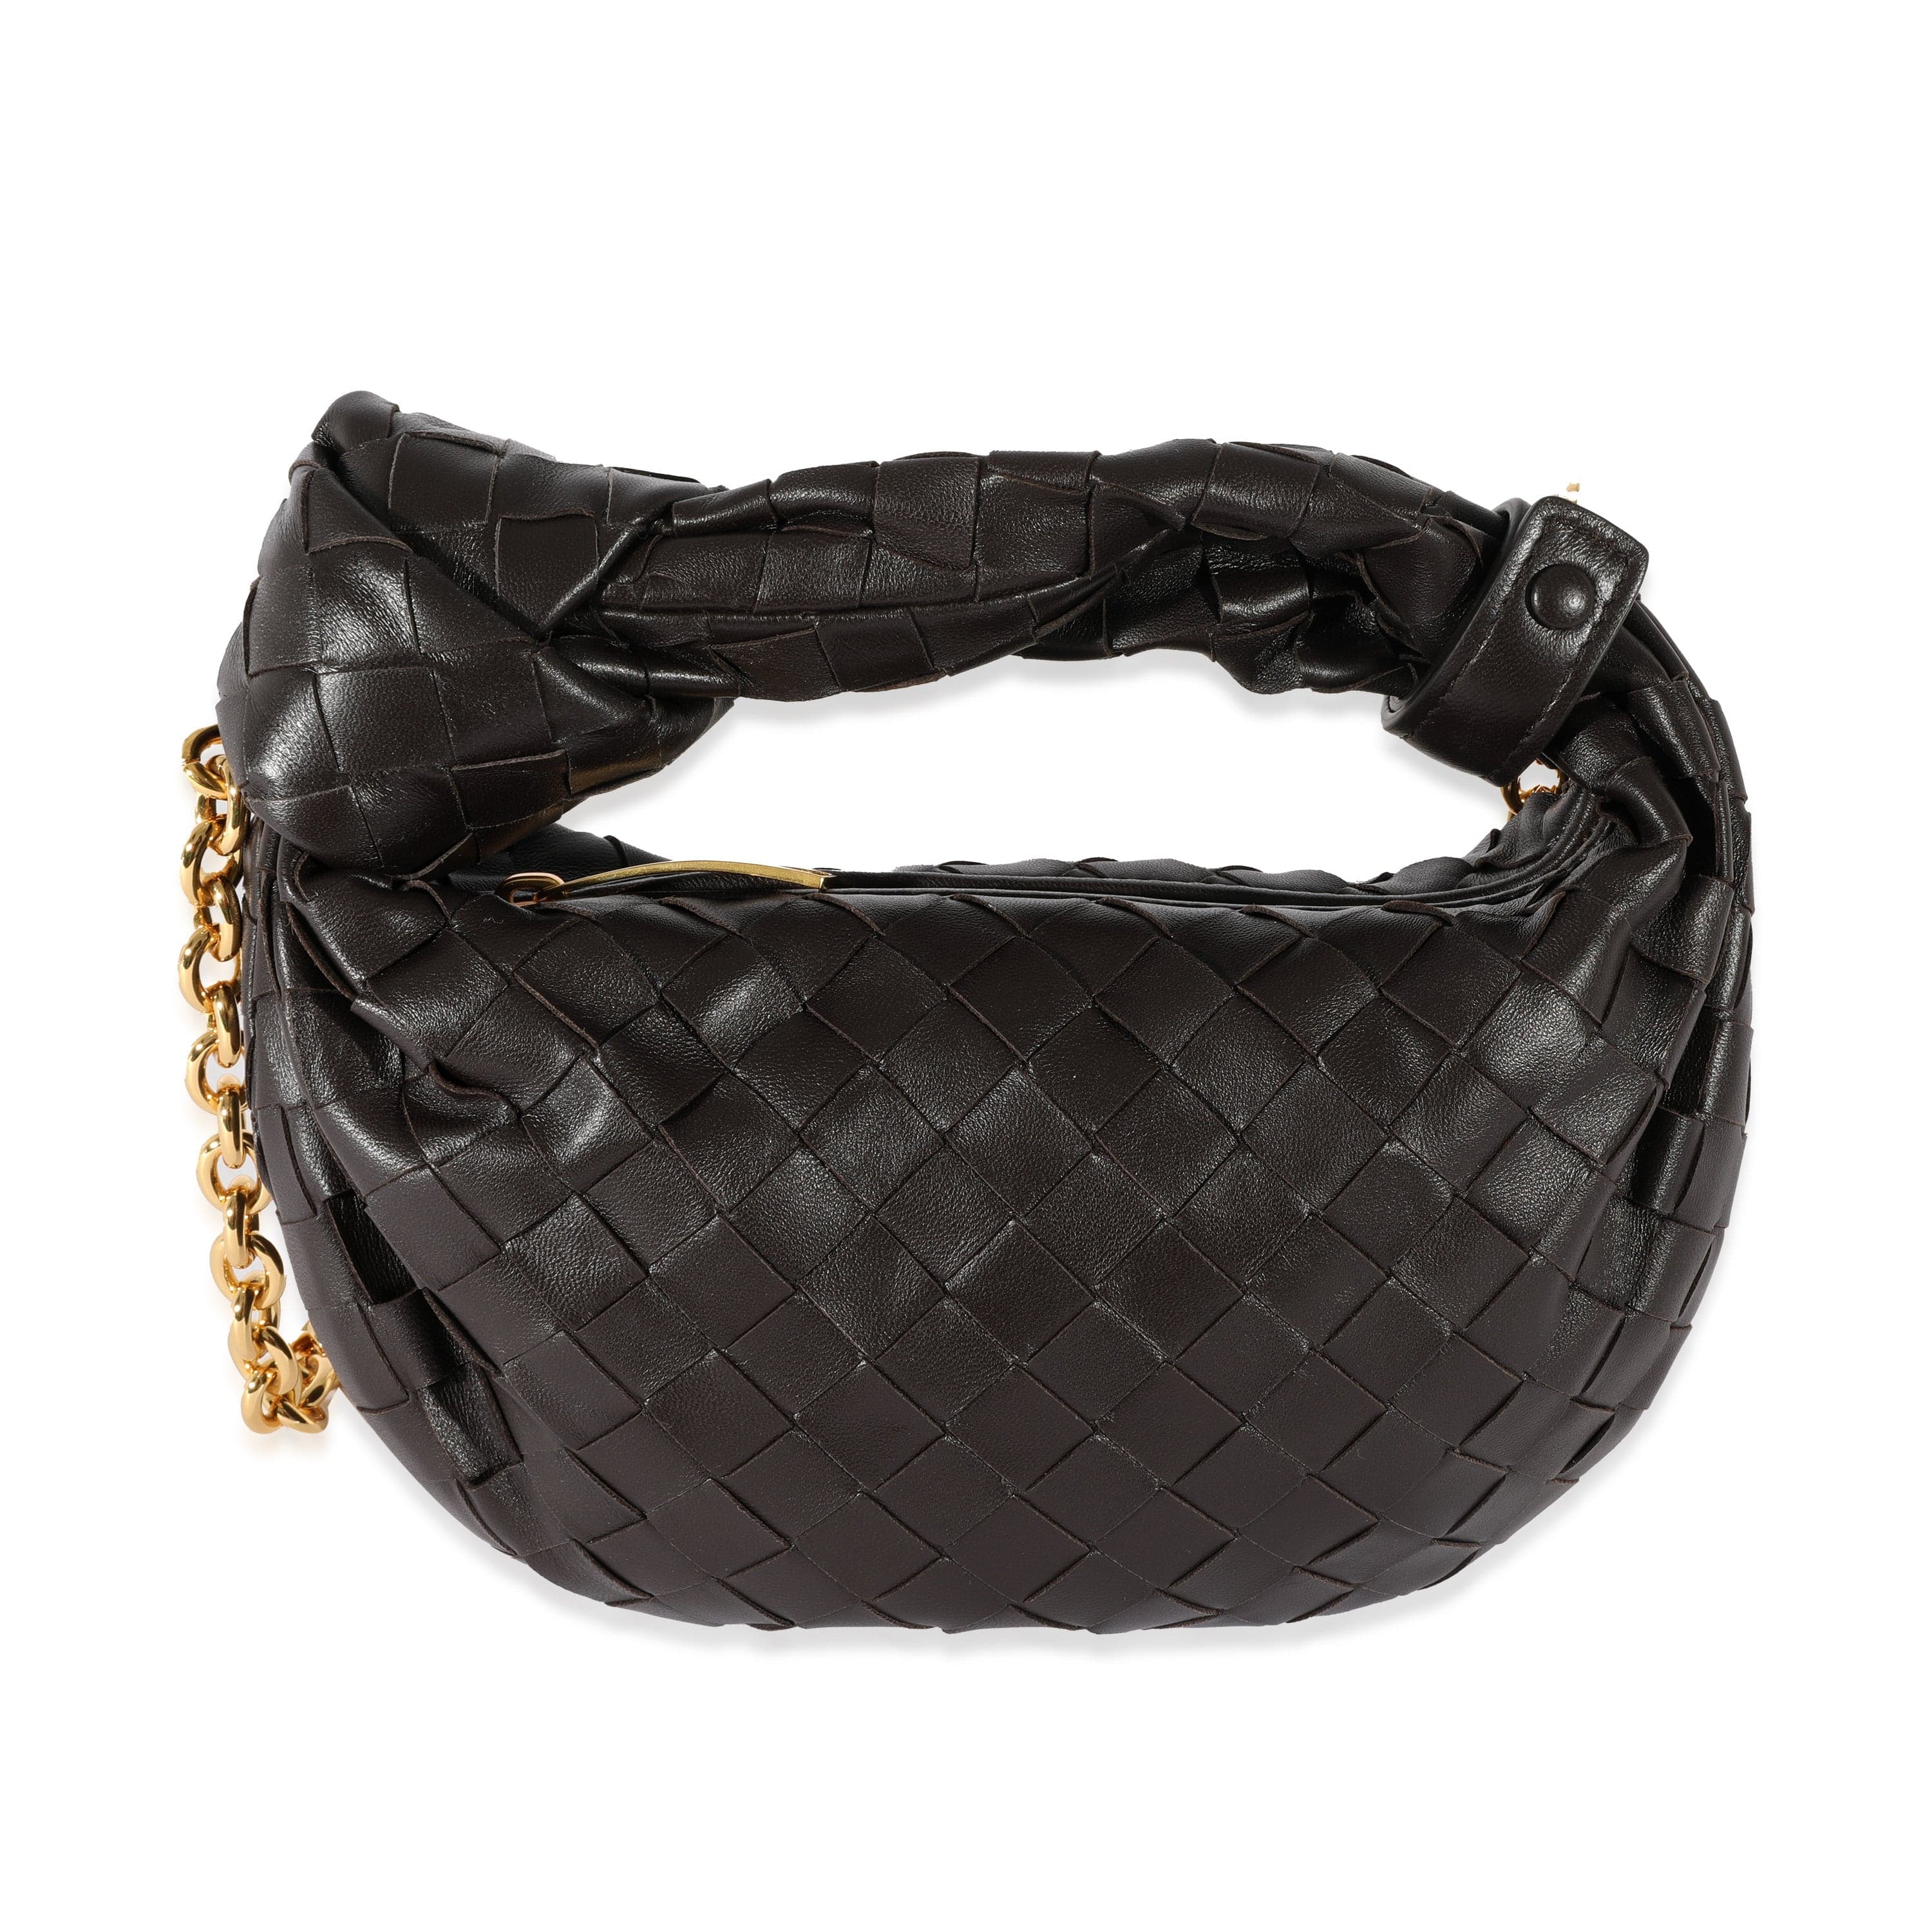 Bottega Veneta - Jodie Black Leather Intrecciato Small Hobo Bag